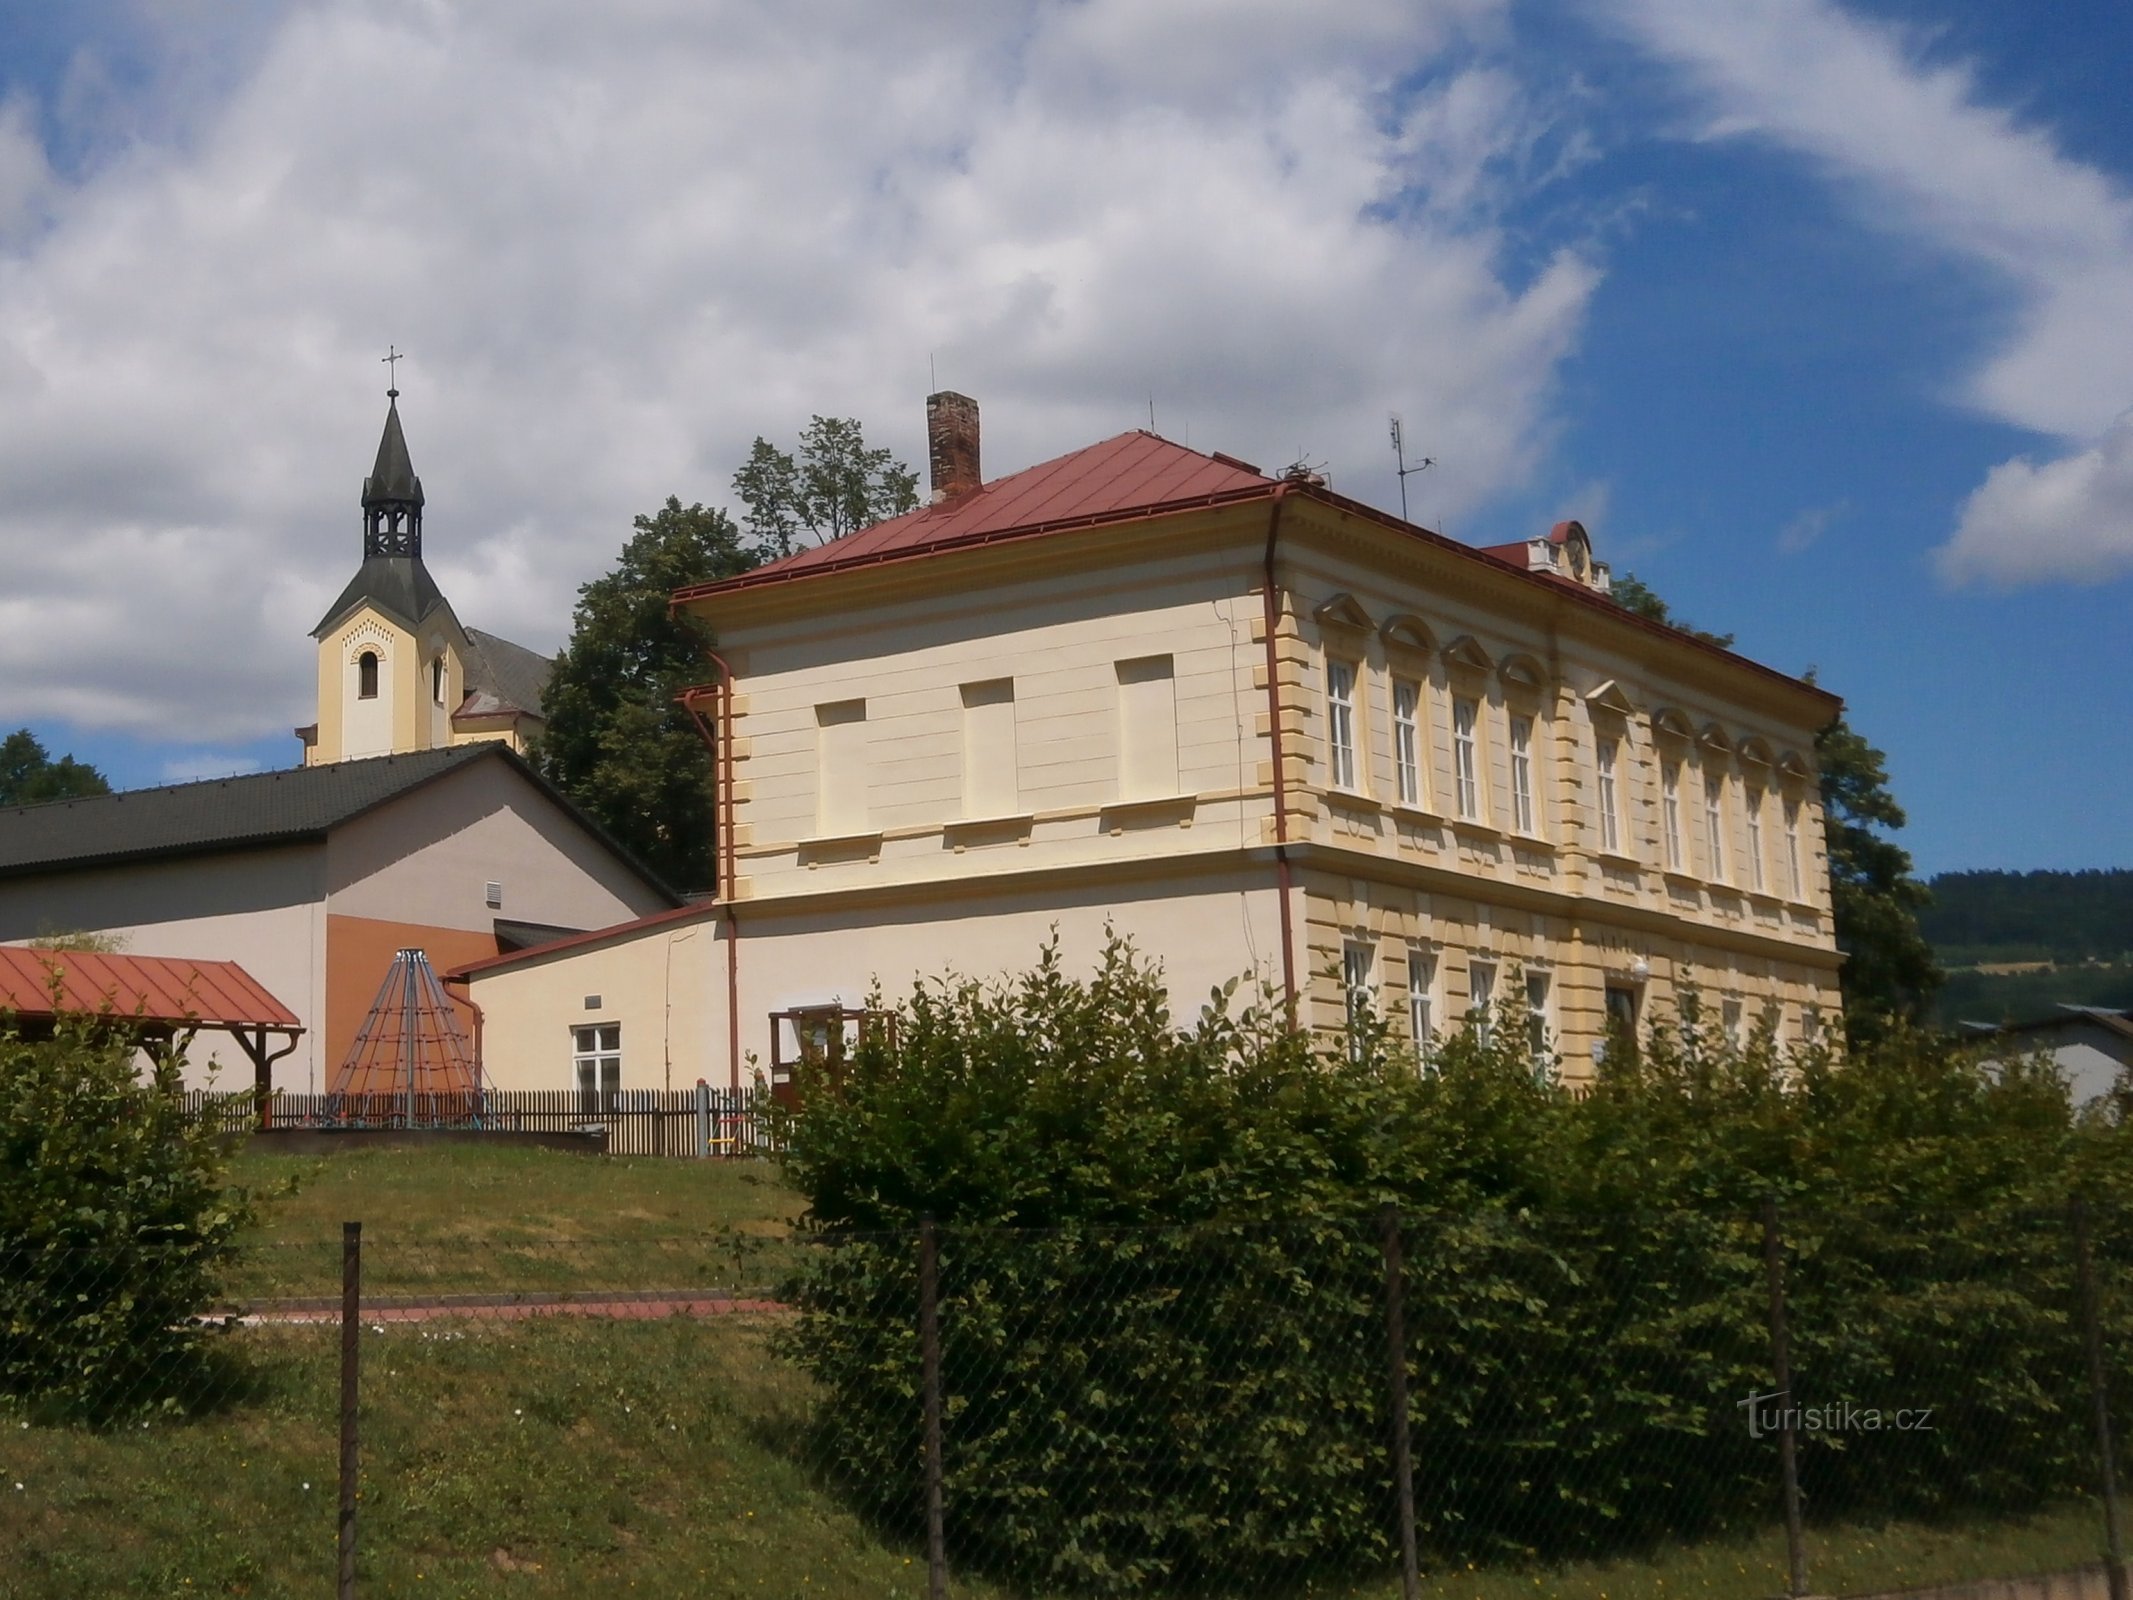 École avec une église en arrière-plan (Batňovice, 3.7.2017 juillet XNUMX)